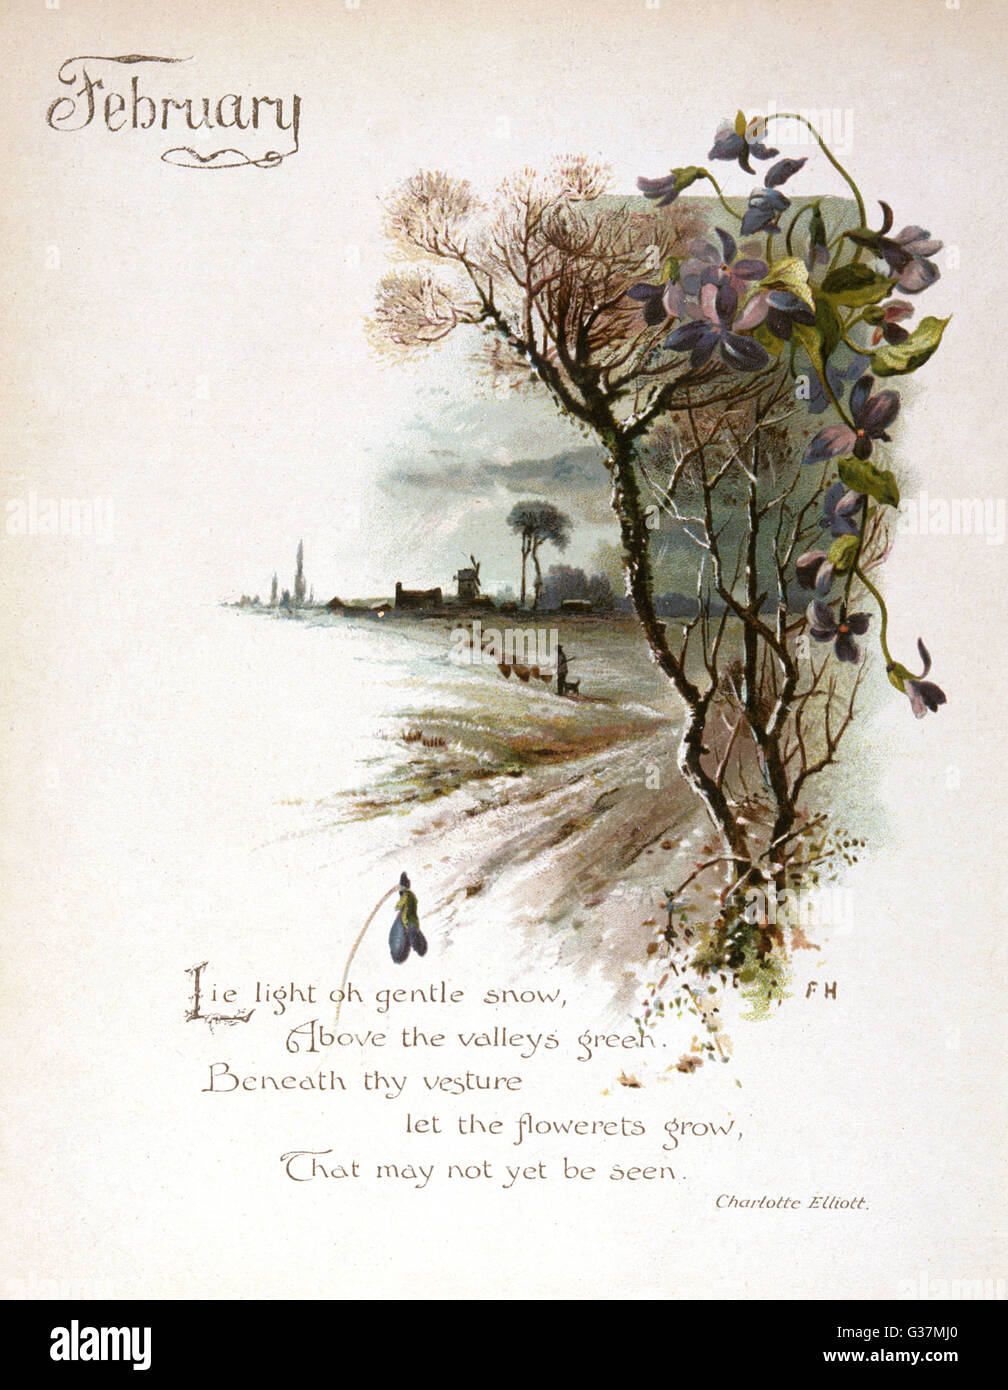 Illustrazione del libro -- febbraio, con un paese nevoso scena. Data: circa 1880 Foto Stock